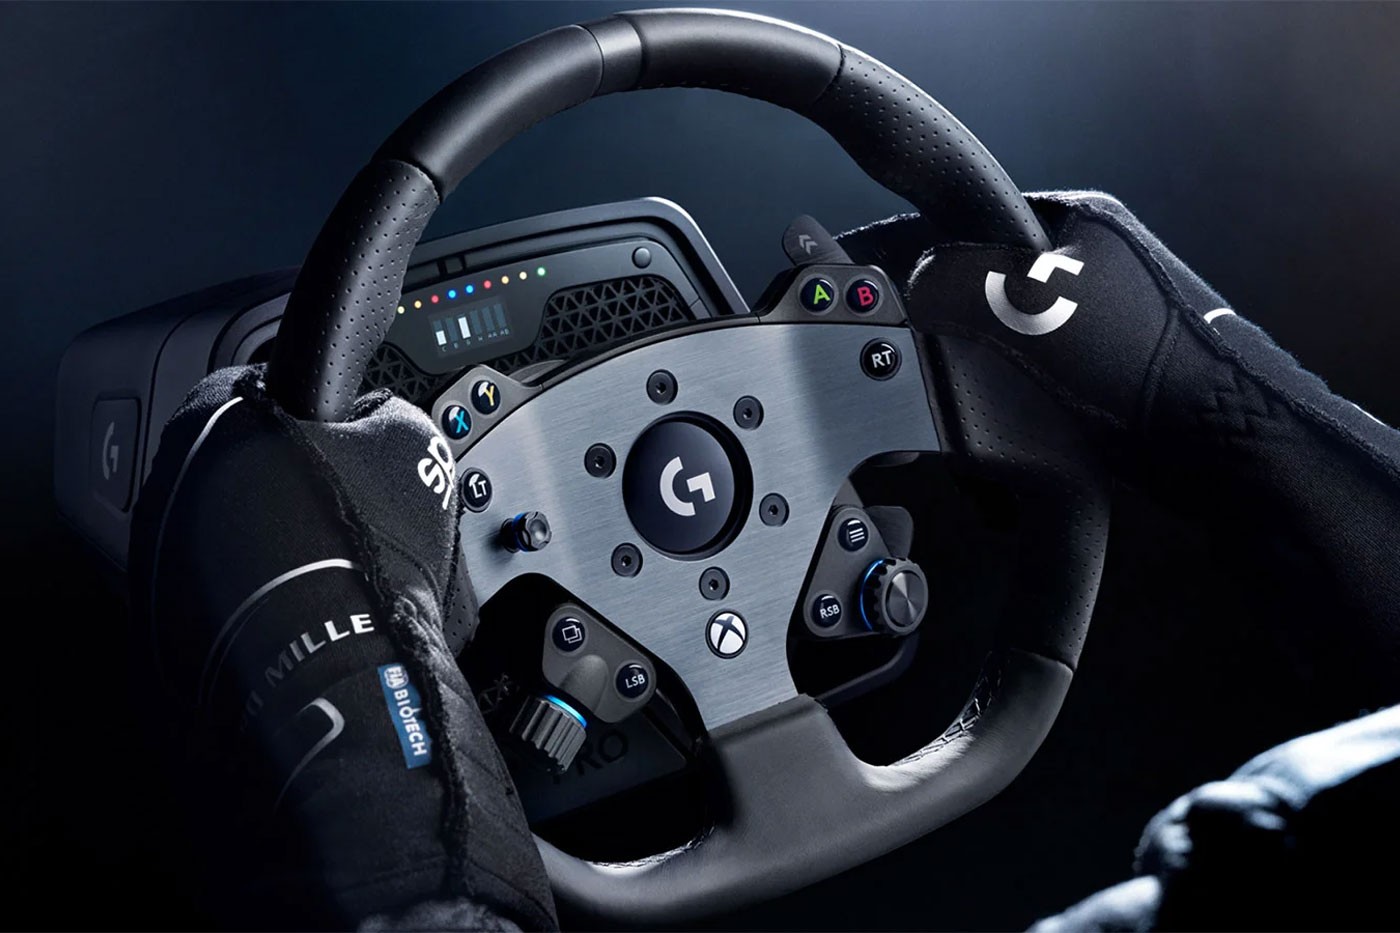 Logitech G27 vs G29 Gaming Steering Wheel (Who is Winner) 